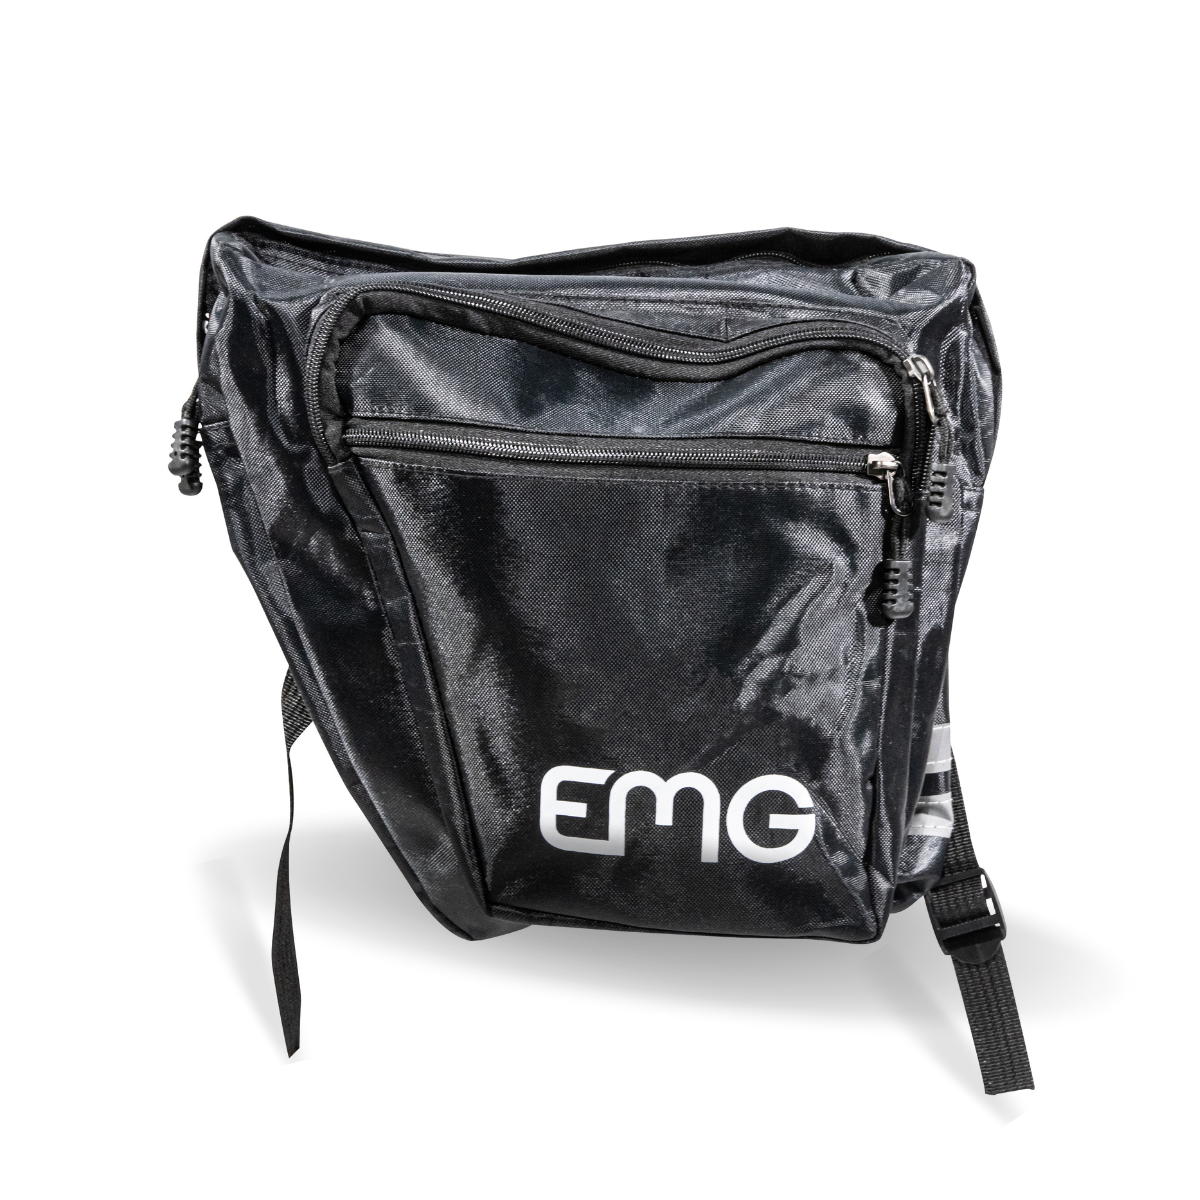 EMG Bag